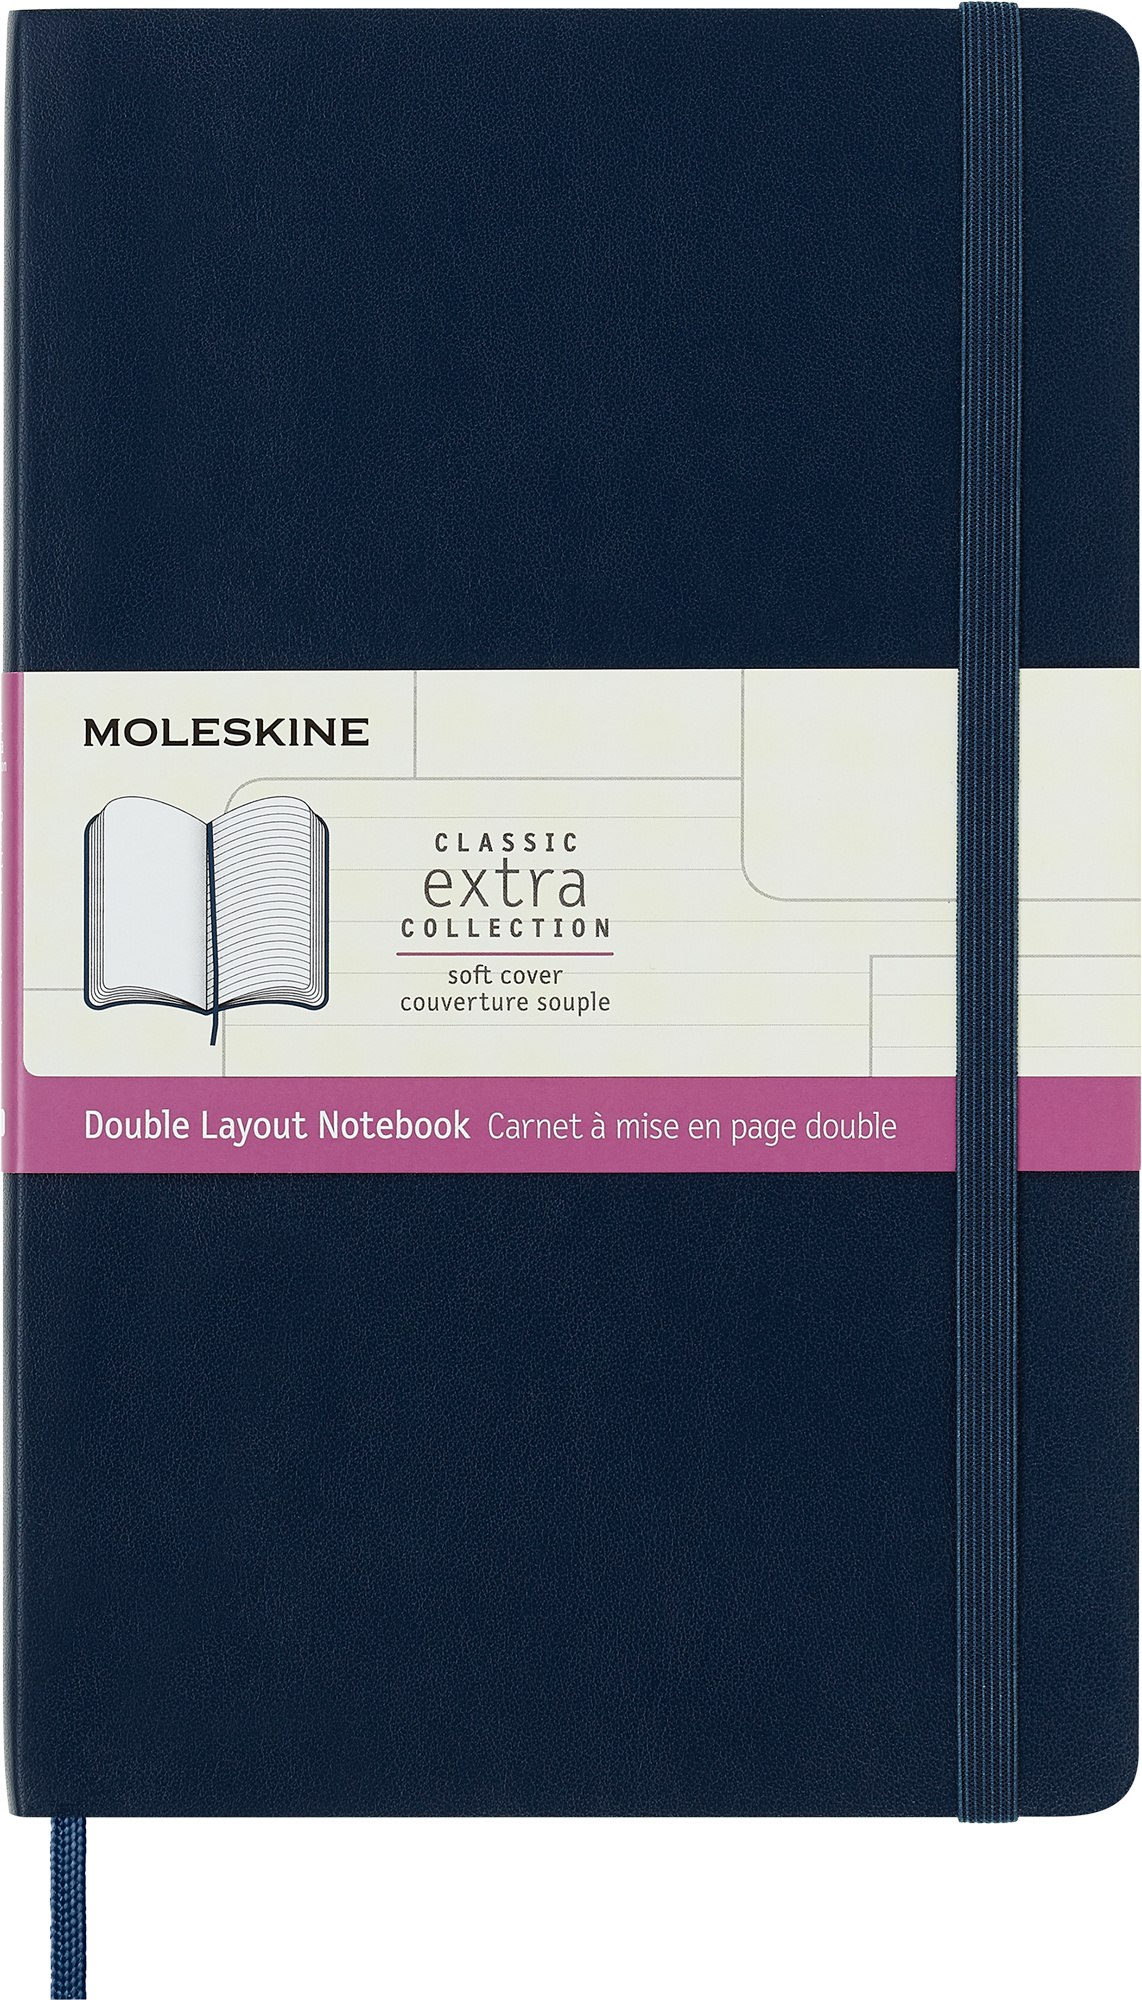 Блокнот Moleskine CLASSIC SOFT DOUBLE NB313SB20 Large 130х210мм 192стр. линейка мягкая обложка синий